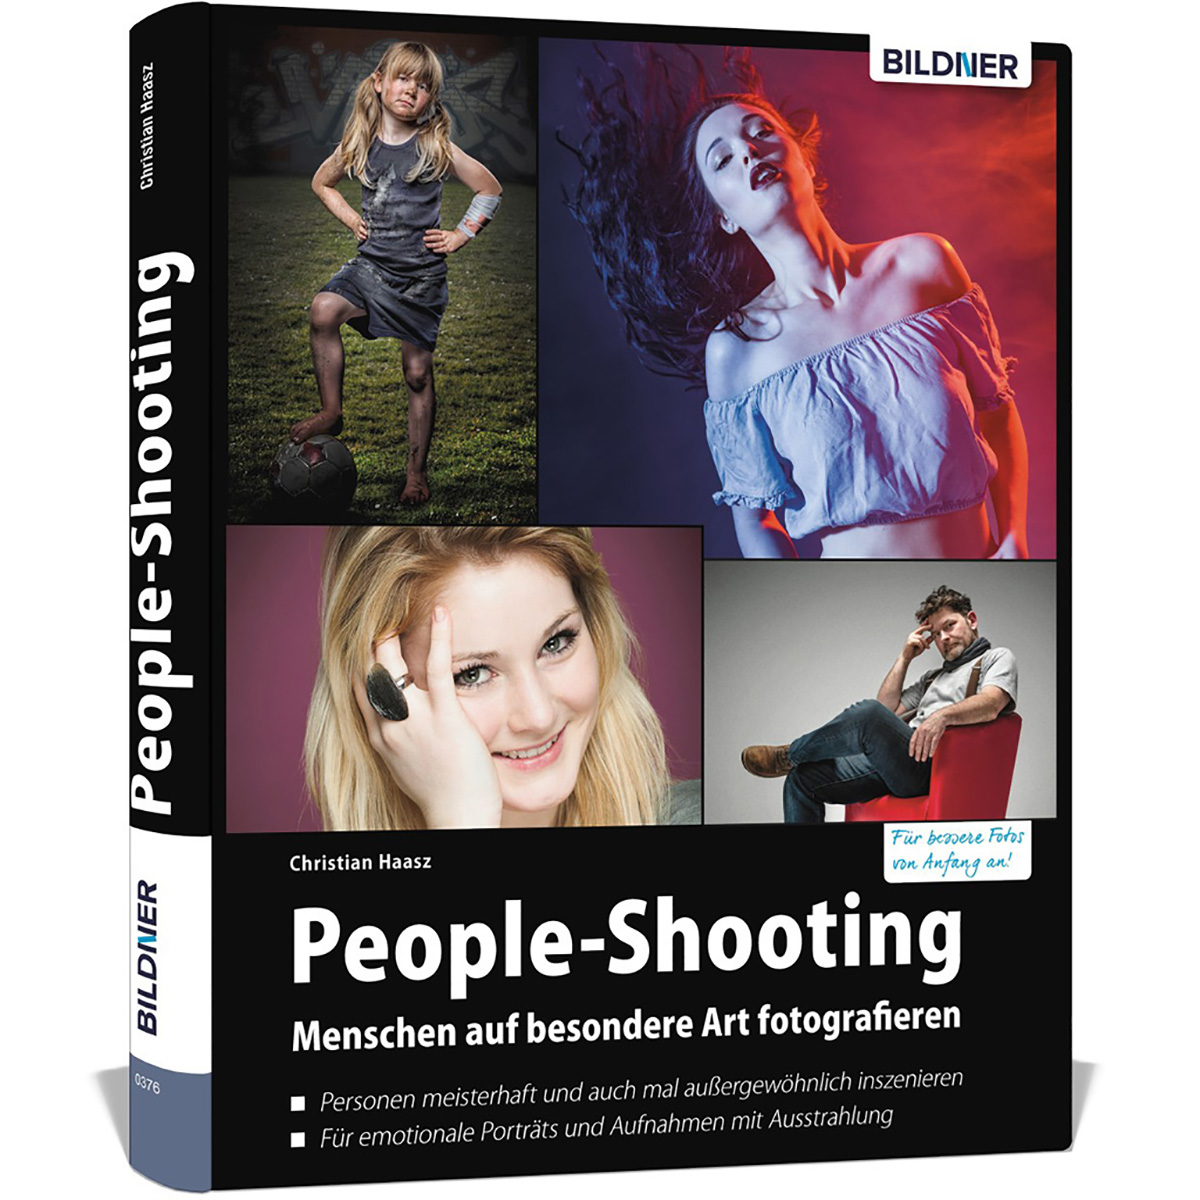 People-Shooting - Menschen auf Art fotografieren besondere